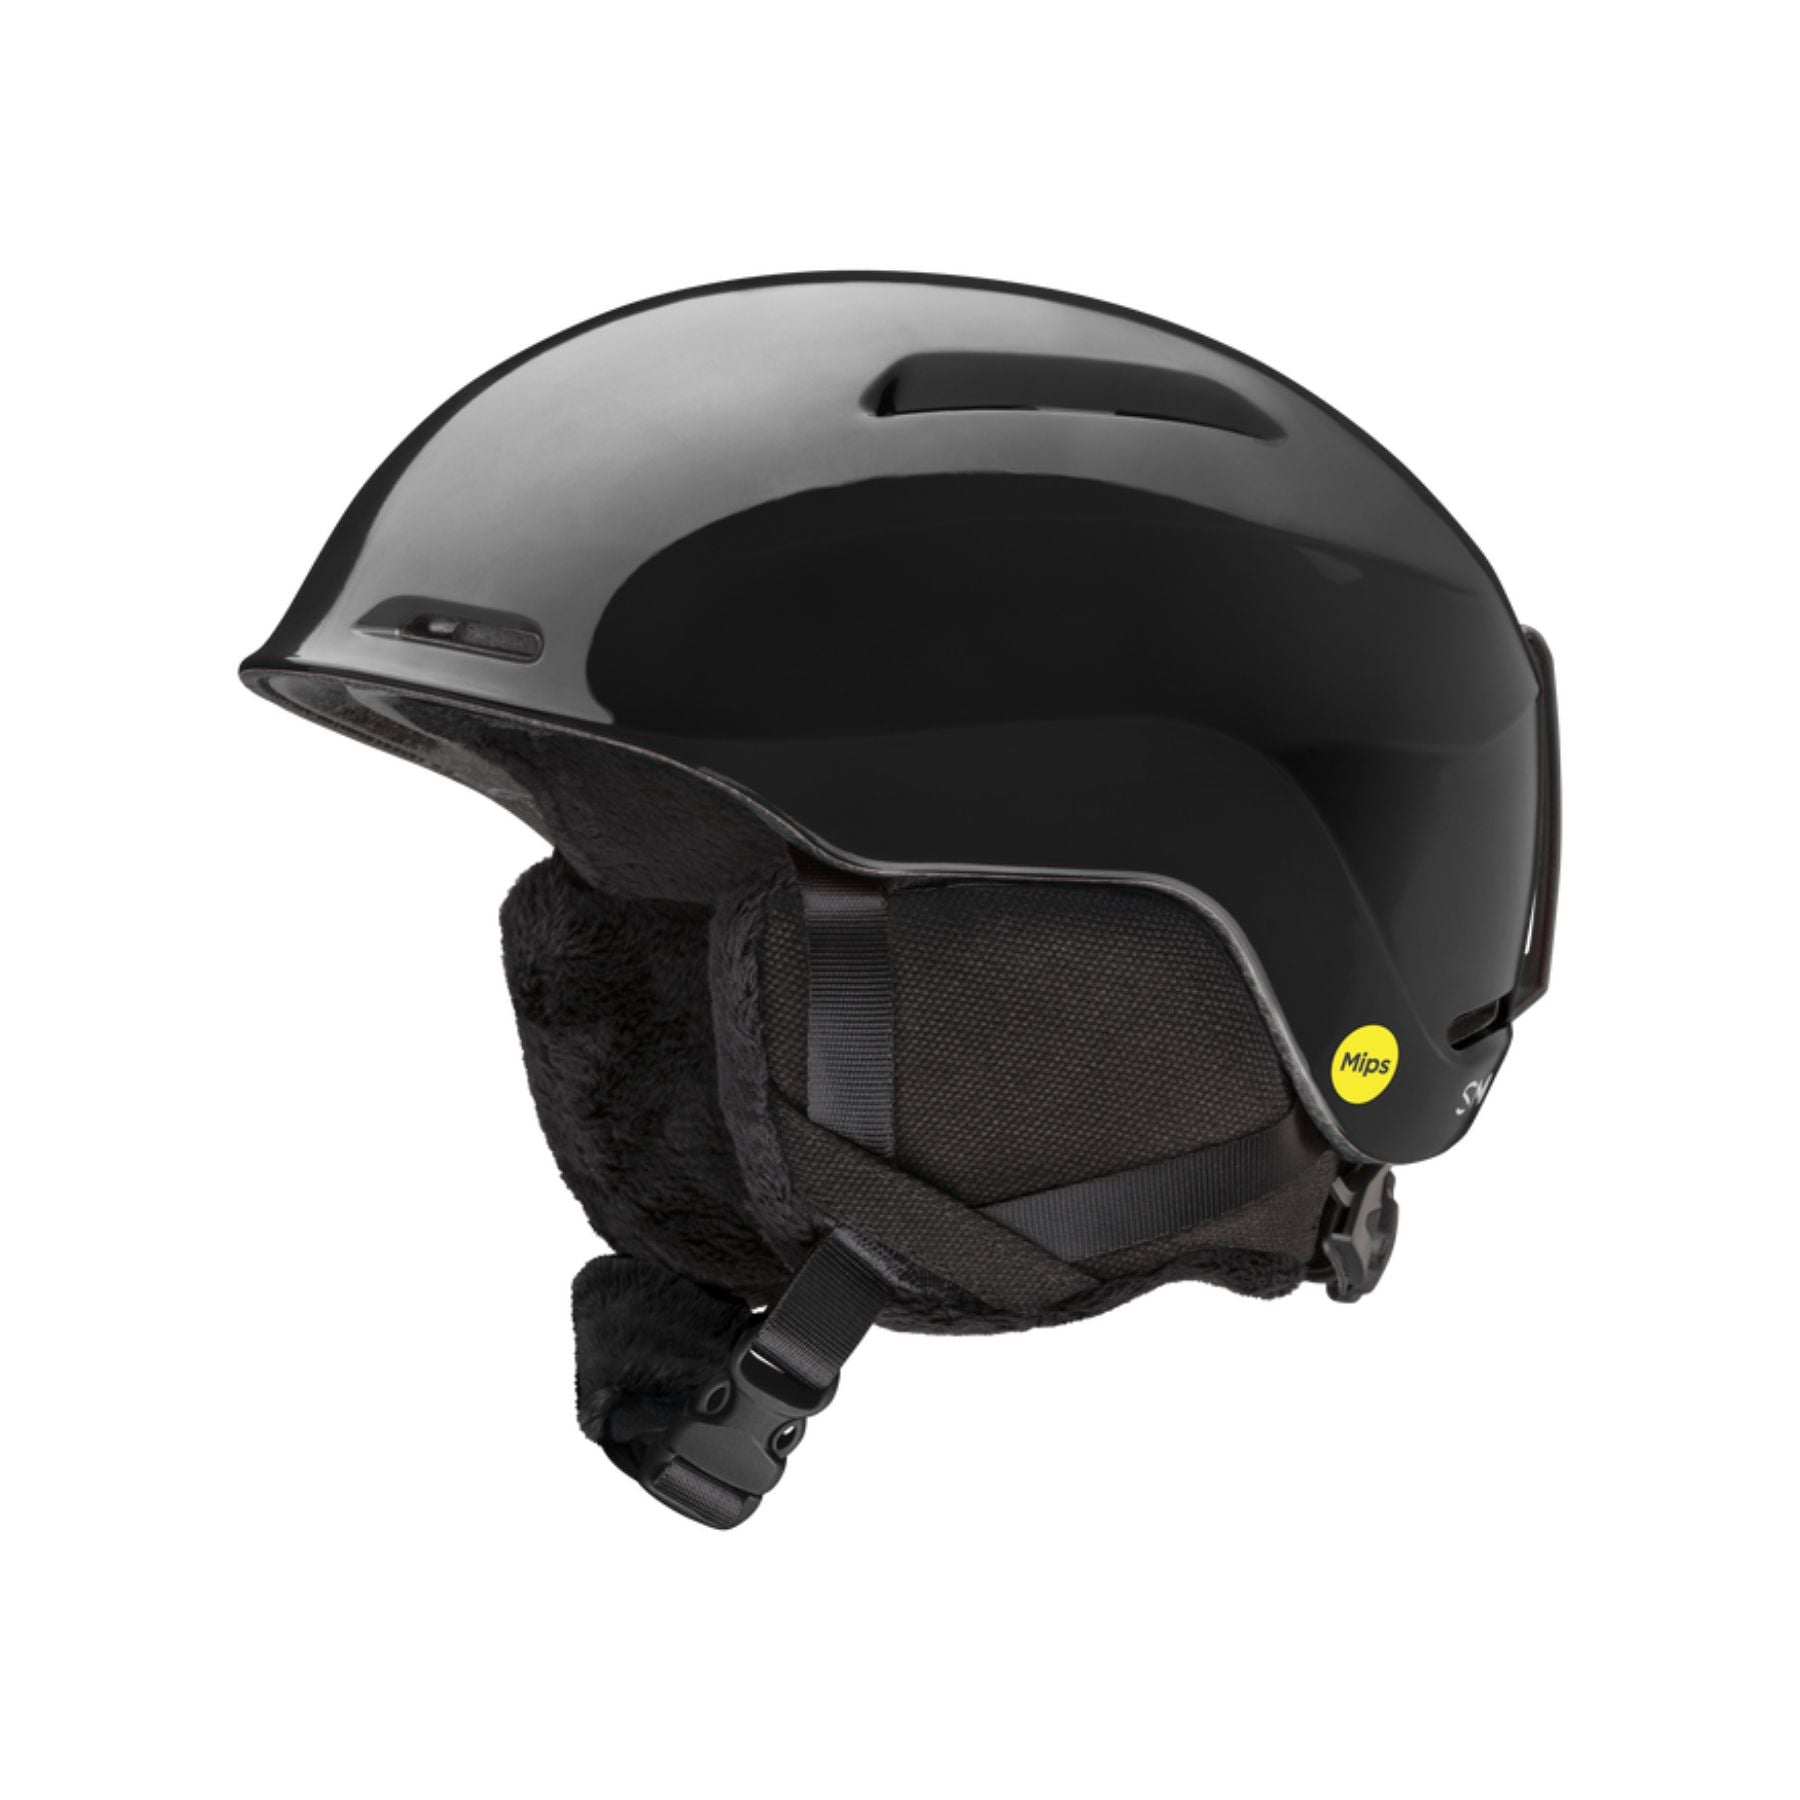 Smith Glide Jr Mips Helmet in Black